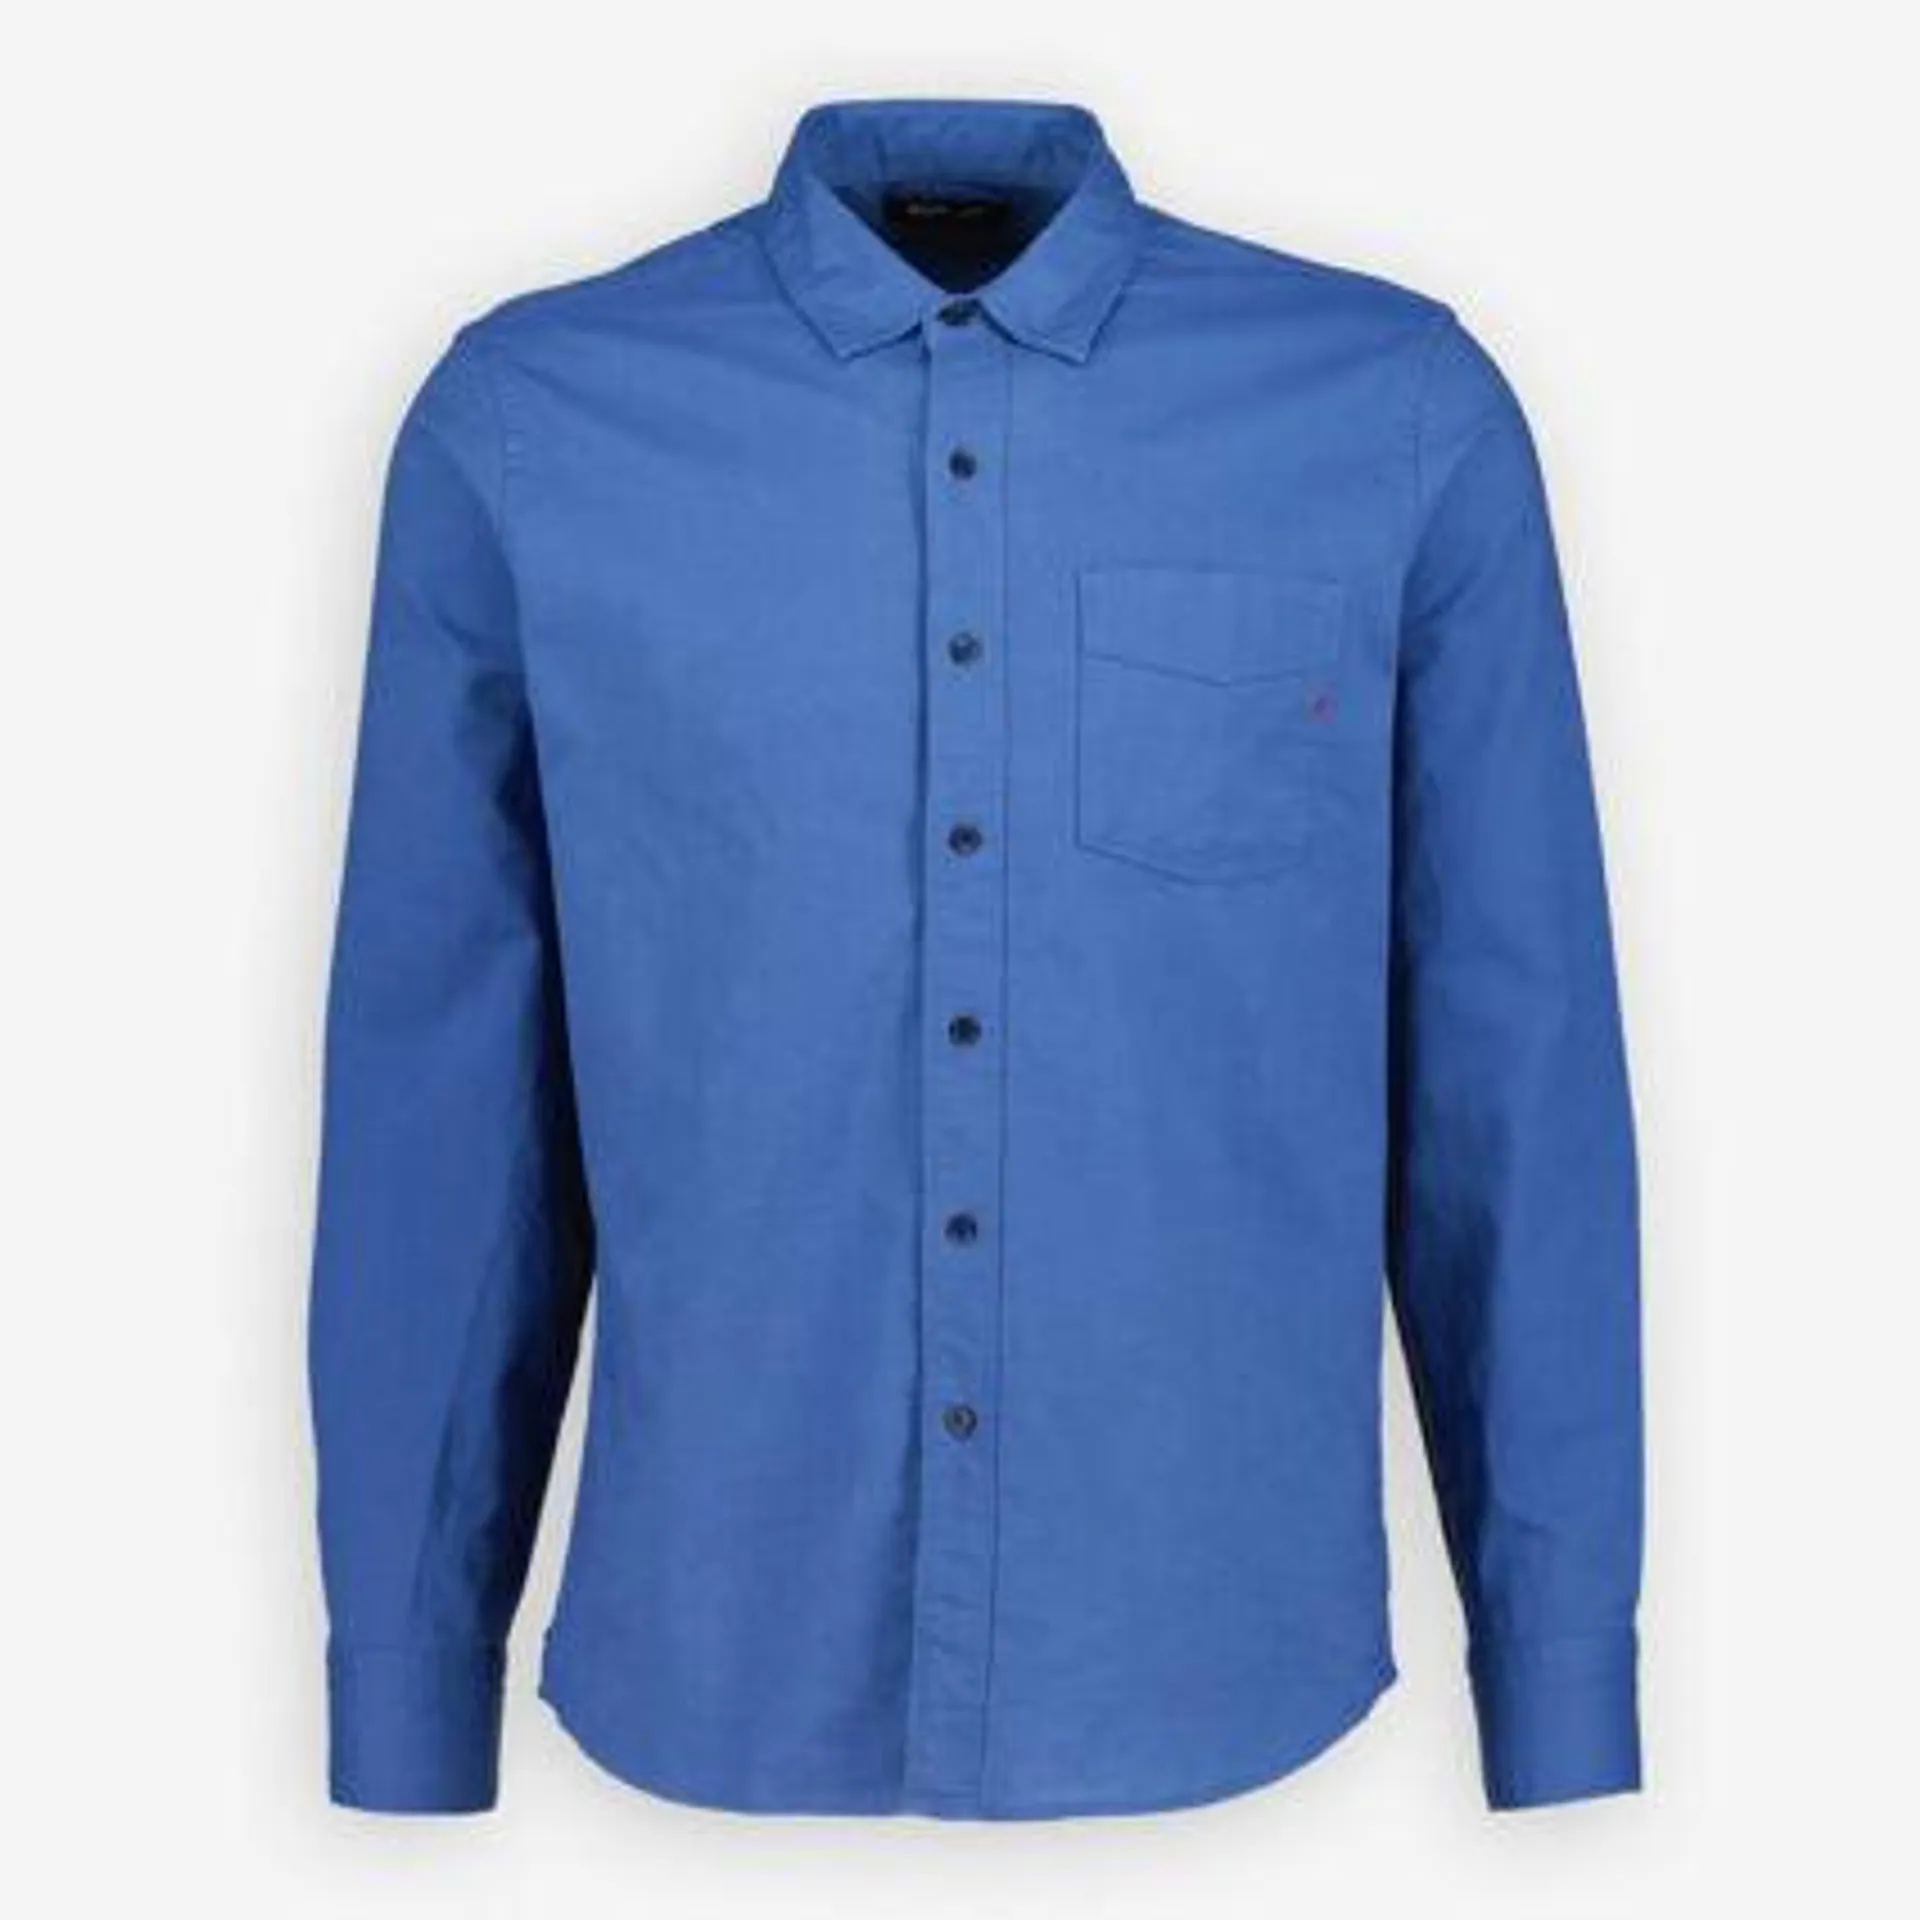 Blaues Langarmhemd mit Brusttasche